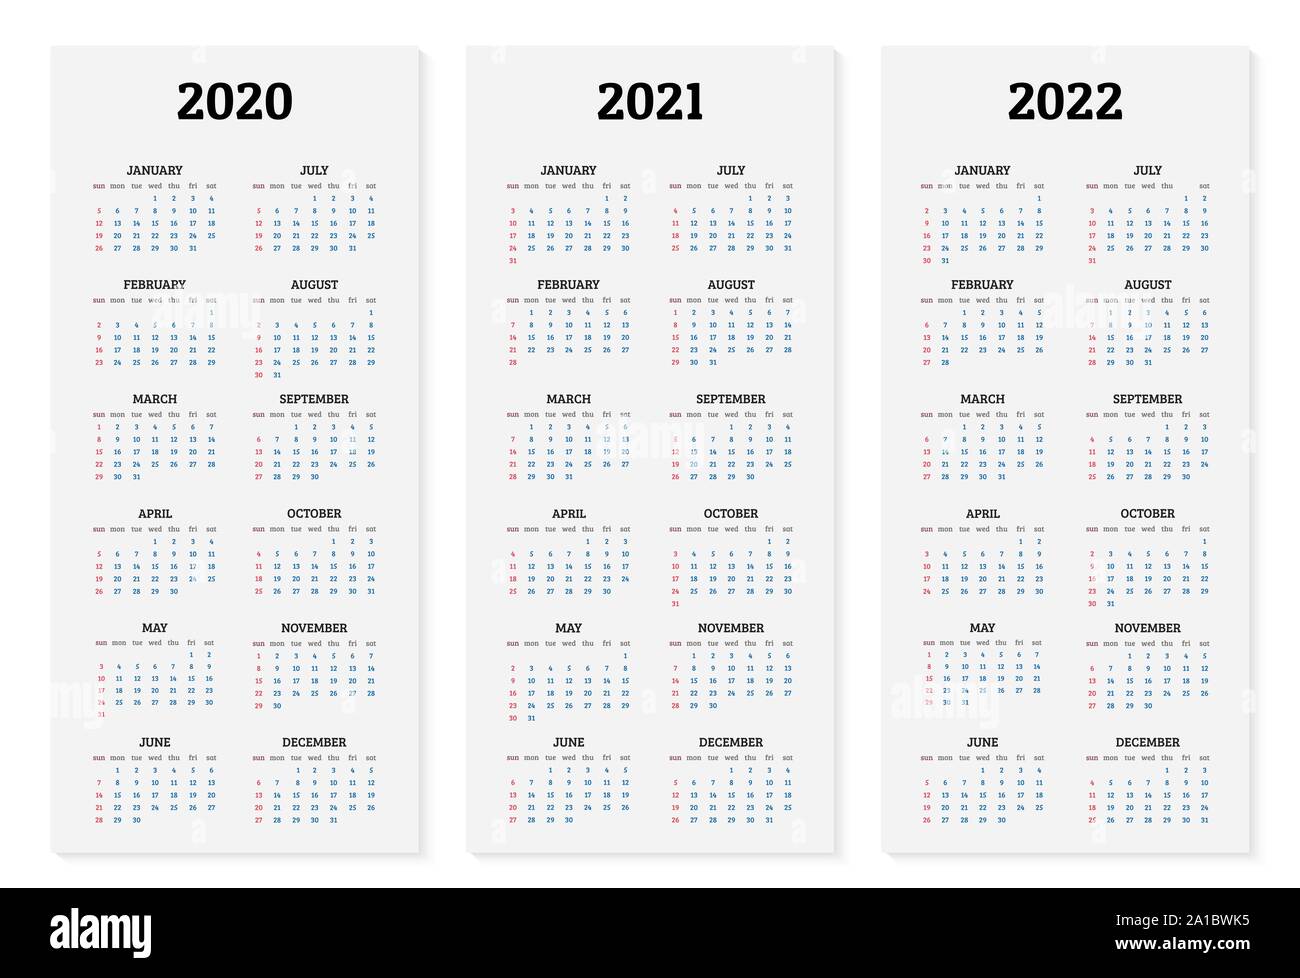 2022 Annual Calendar Pics